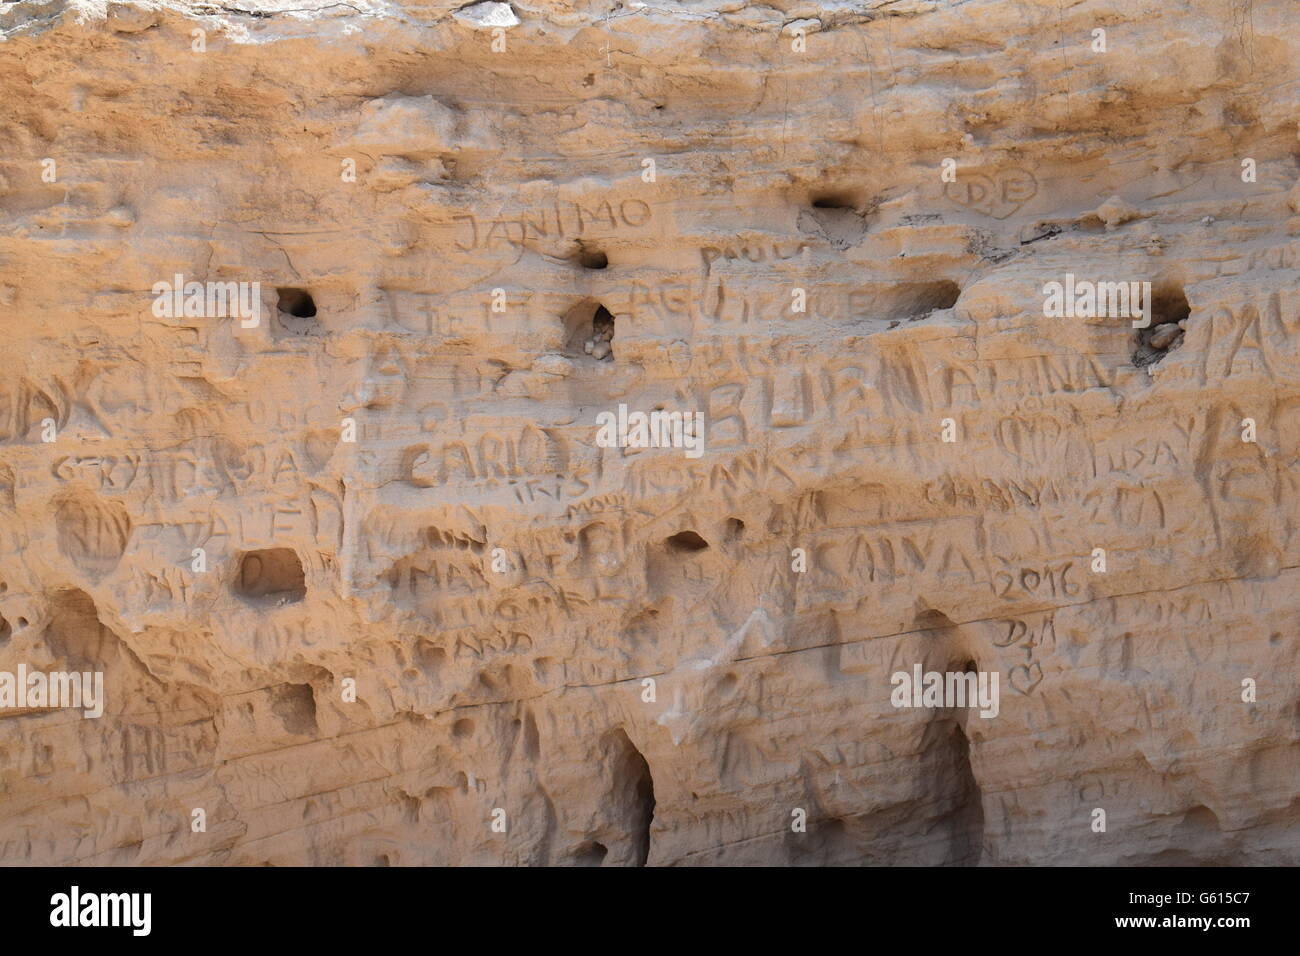 Names written into rock at Calo Saona, Formentera Stock Photo